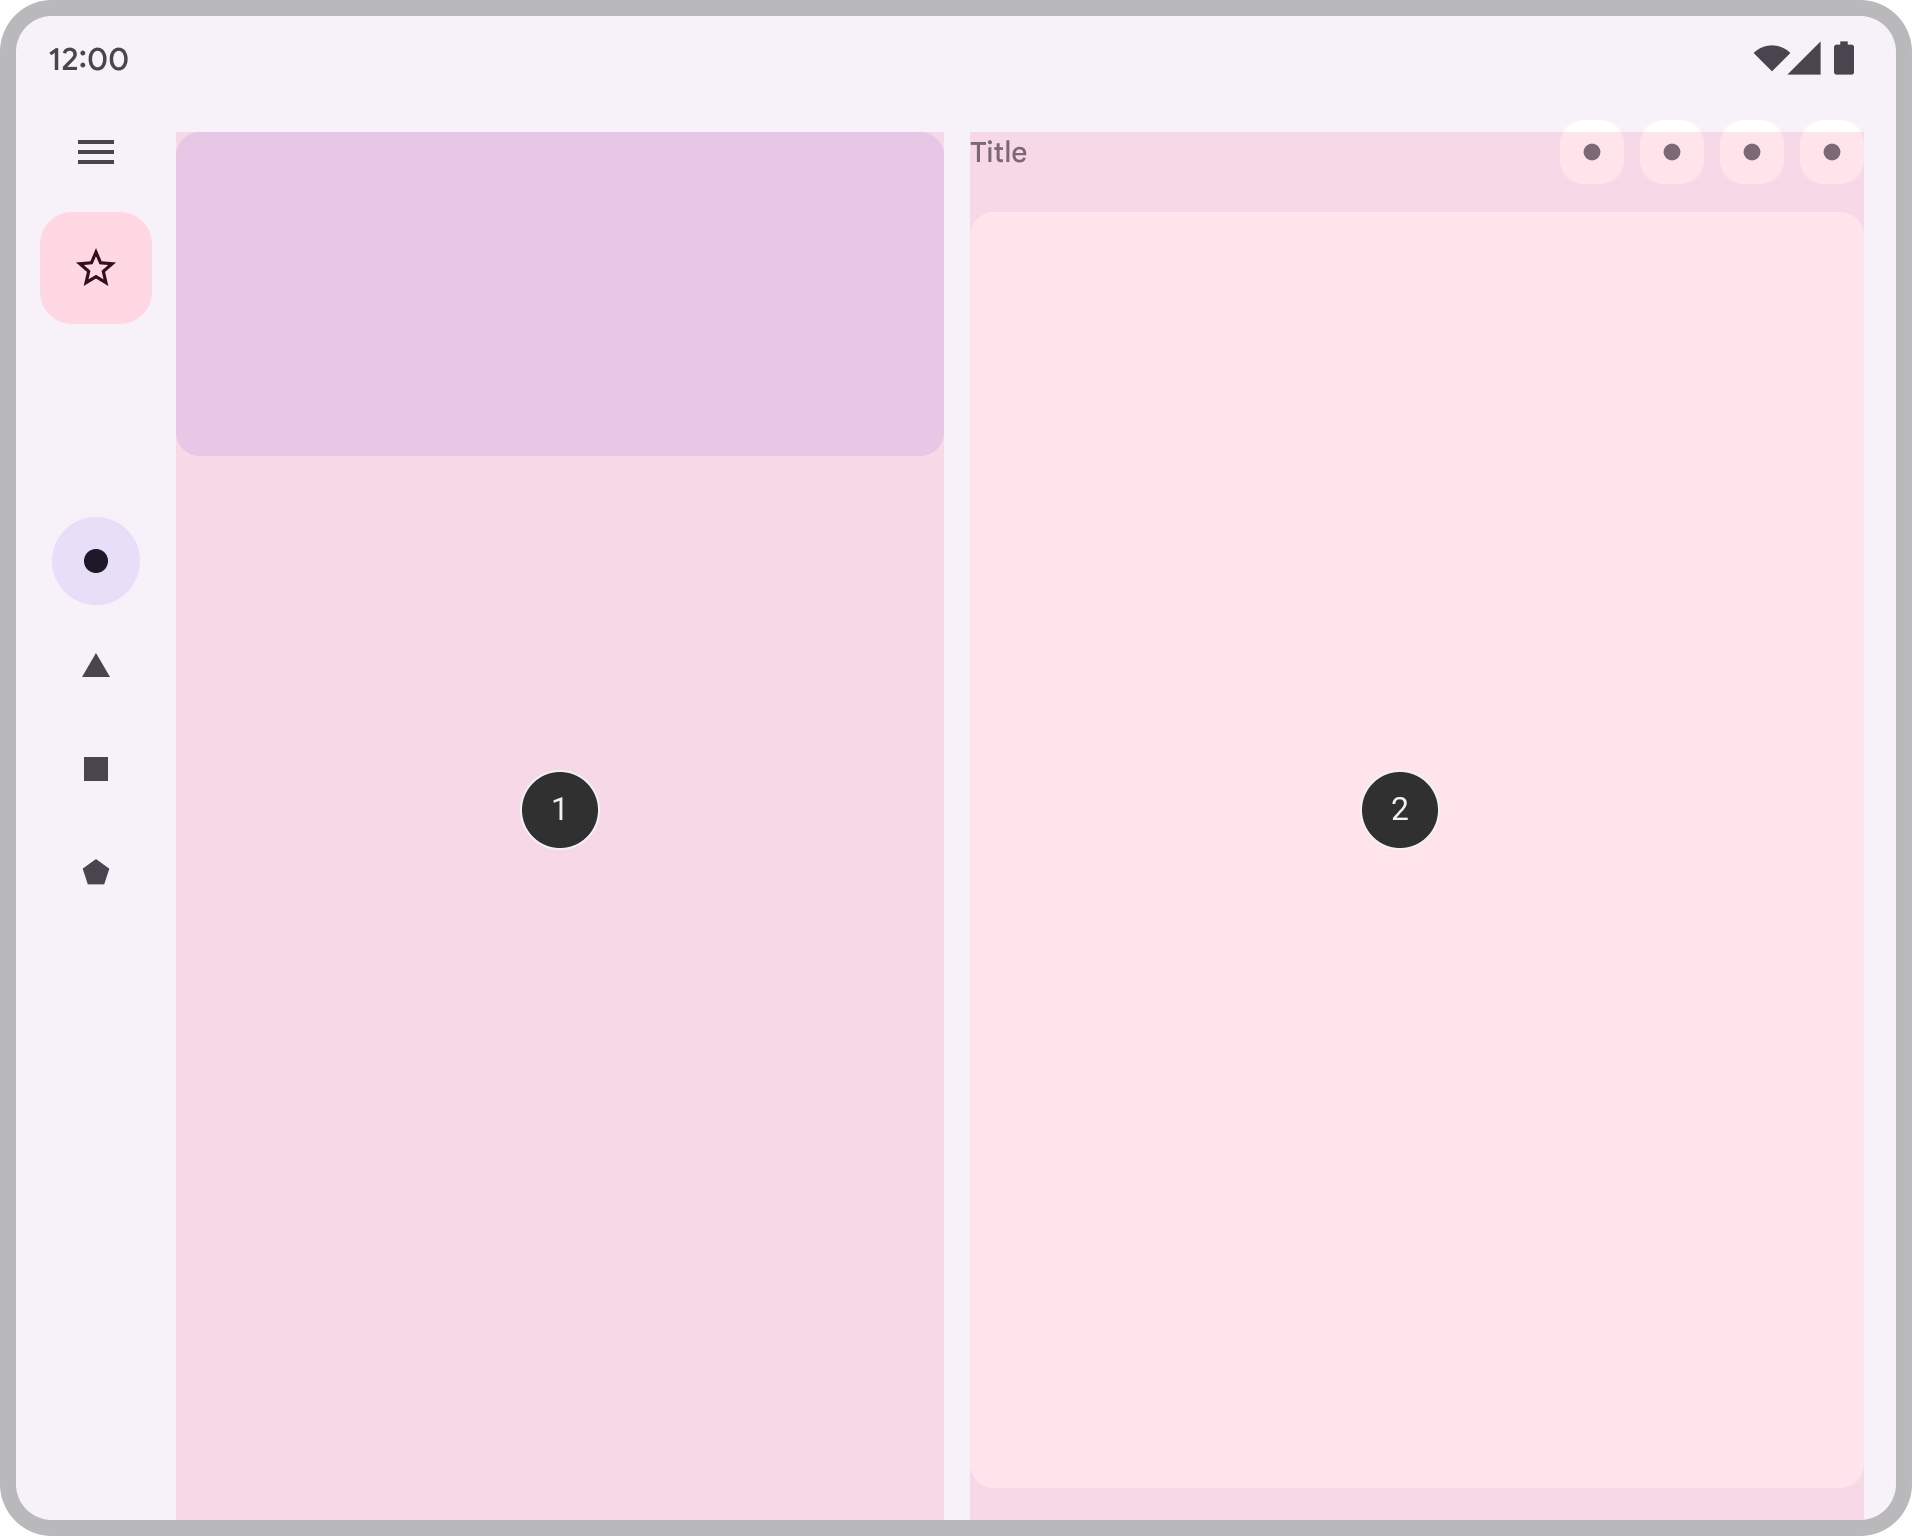 تصویری از یک برنامه که دو صفحه را در کنار هم نشان می دهد.